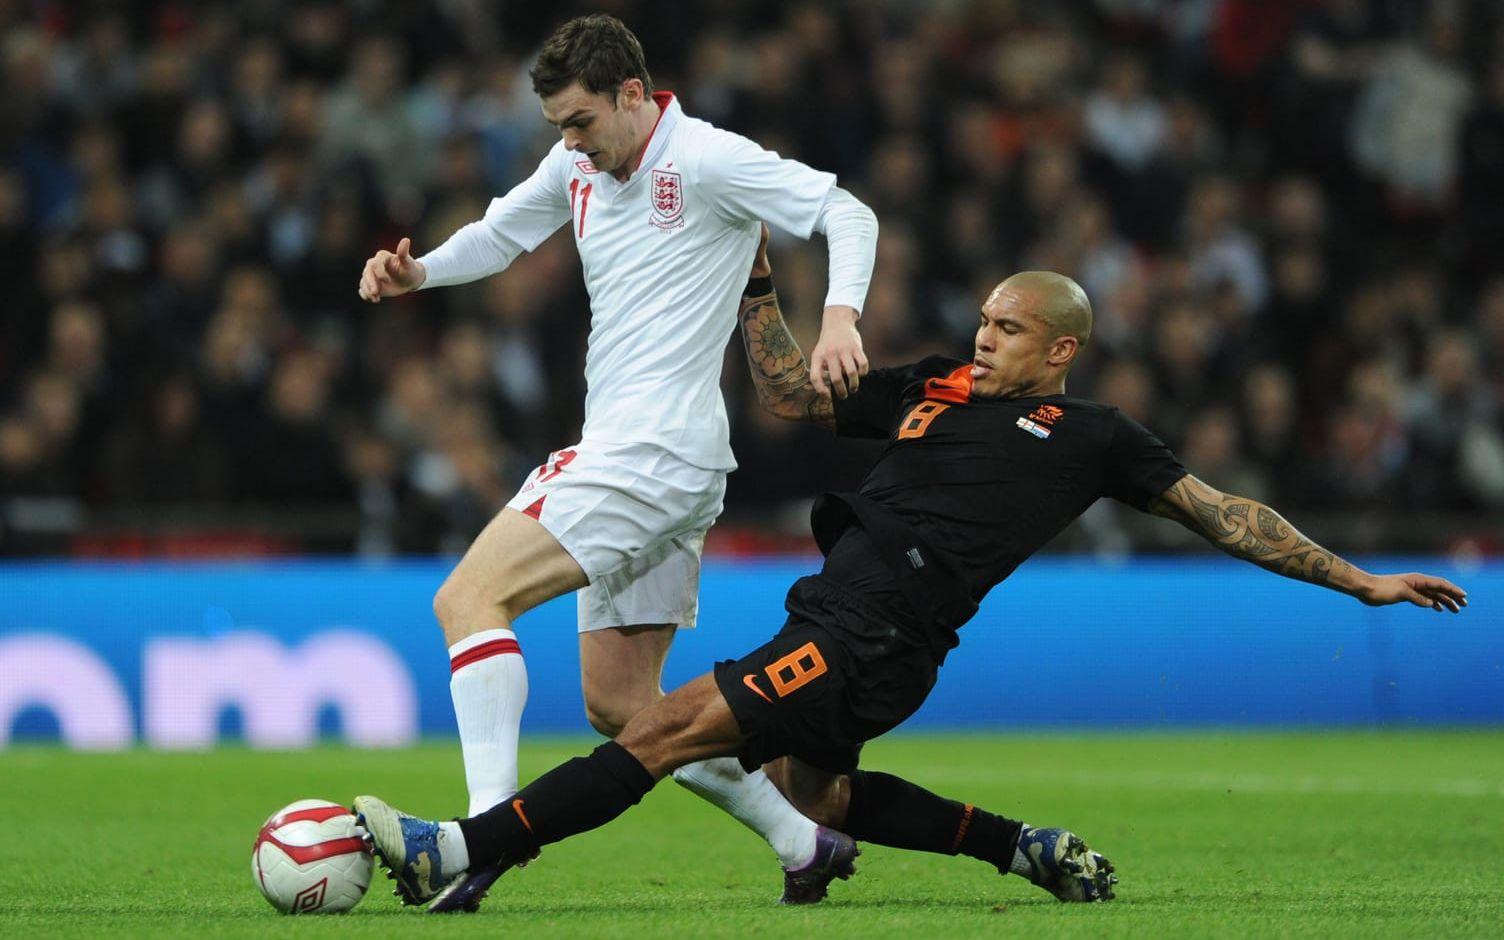 SPELAREN. Adam Johnson gjorde succé i Manchester City i början av 2010-talet och höll på att etablera sig i det engelska landslaget. Men han stannade av i utvecklingen, såldes till Sunderland och sedan förändrades hans liv totalt. Foto: Bildbyrån